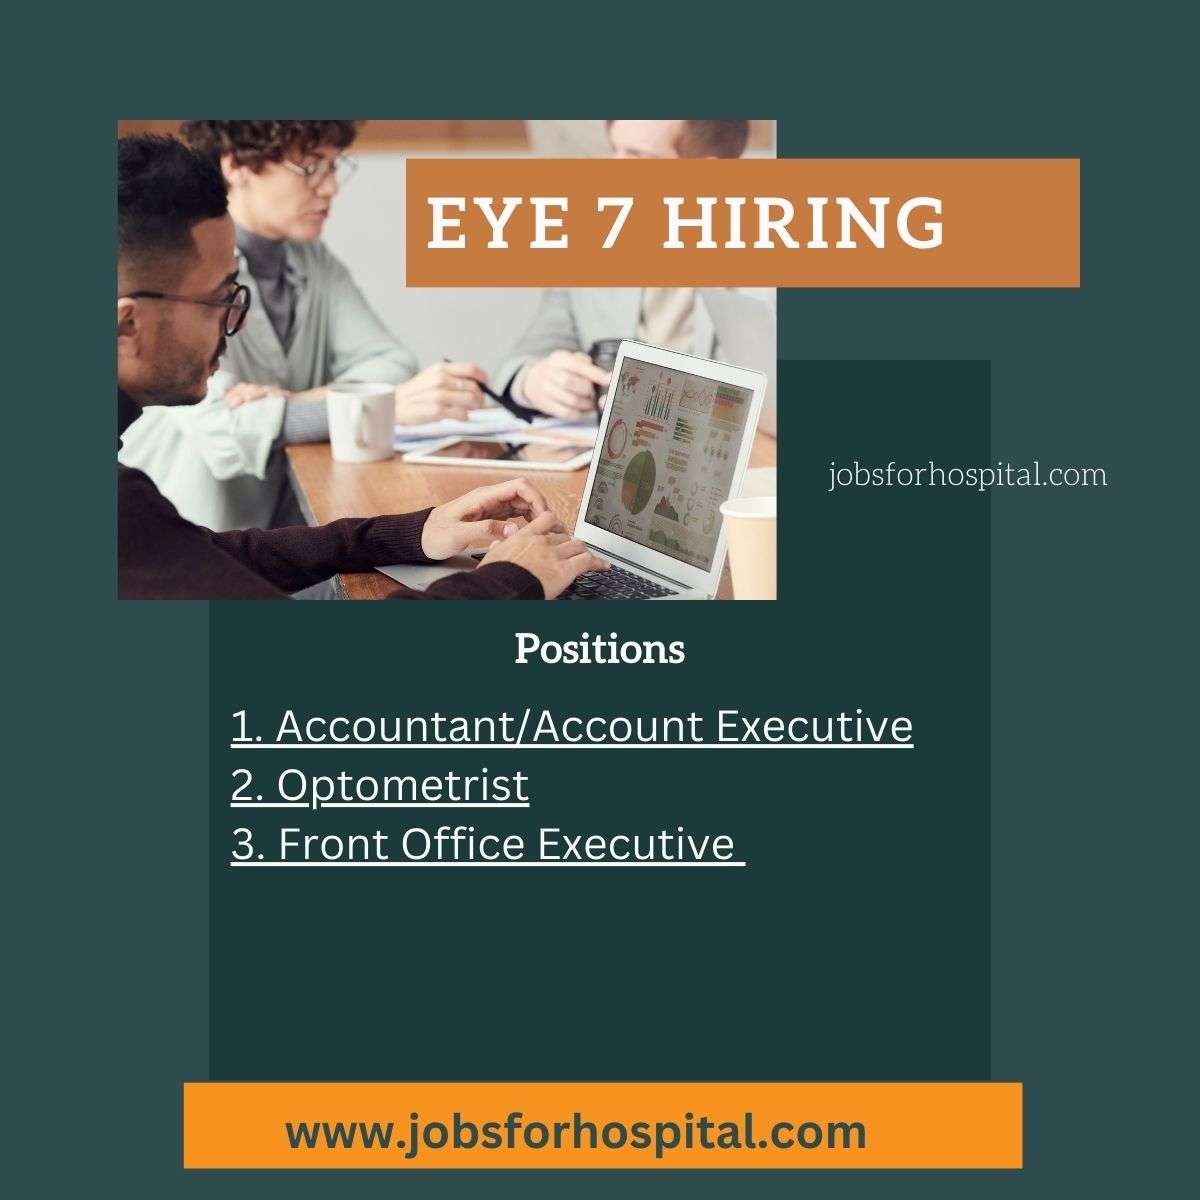 Eye 7 hiring. jobsforhospital.com